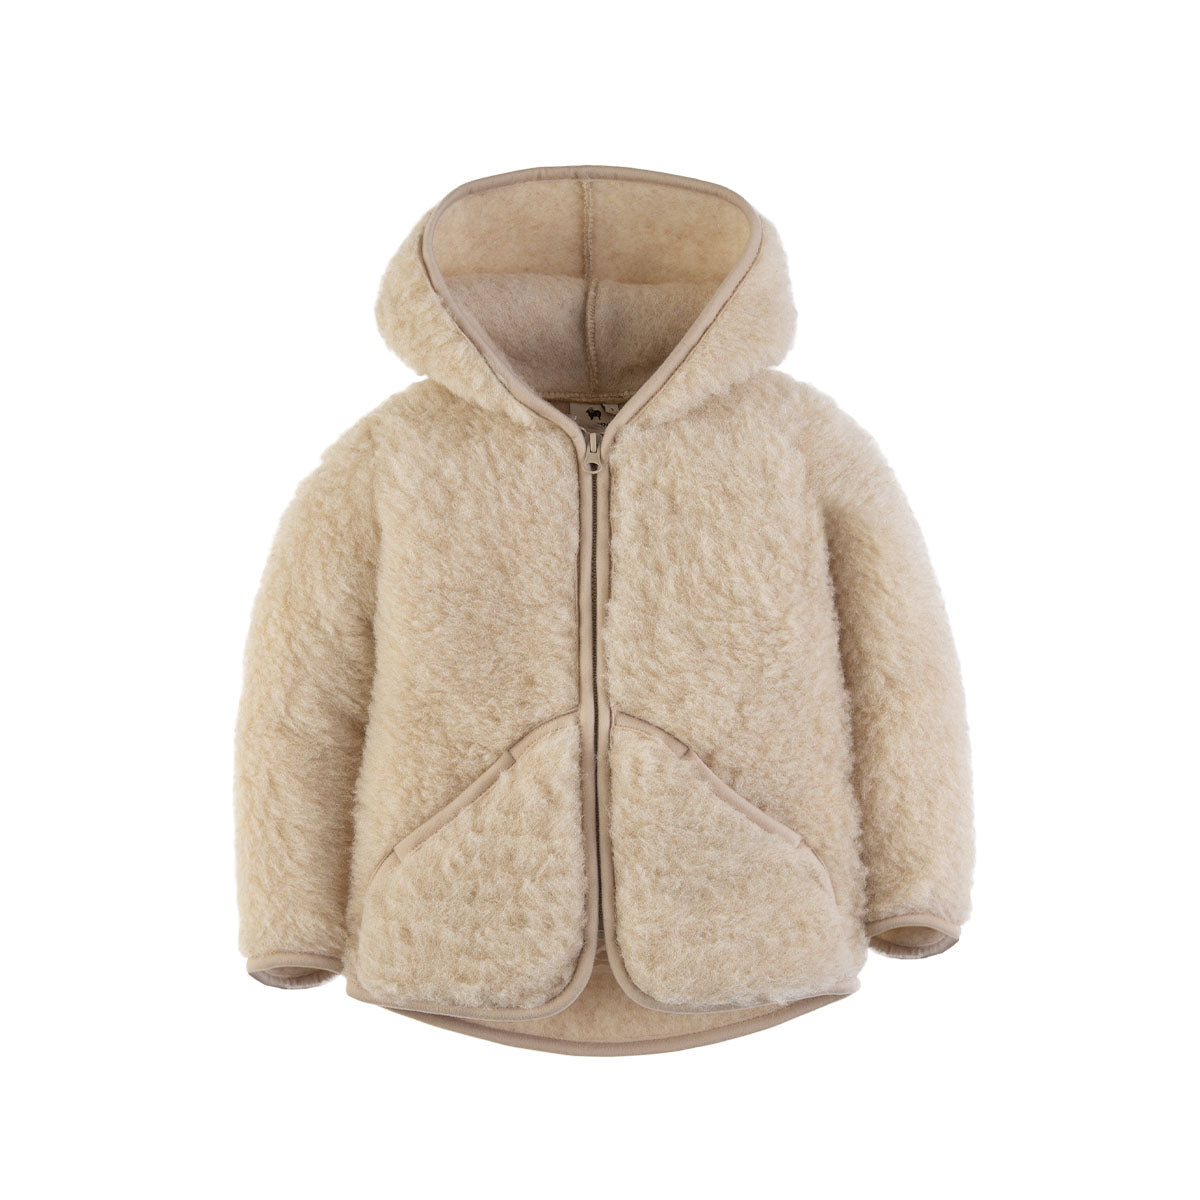 De Alwero mody jas beige is een perfect tussenjasje. Deze jas is gemaakt van 100% wol en daardoor heerlijk warm en zacht. Perfect voor in de herfst of lente, of op warmere winterdagen met een dikke trui eronder. VanZus